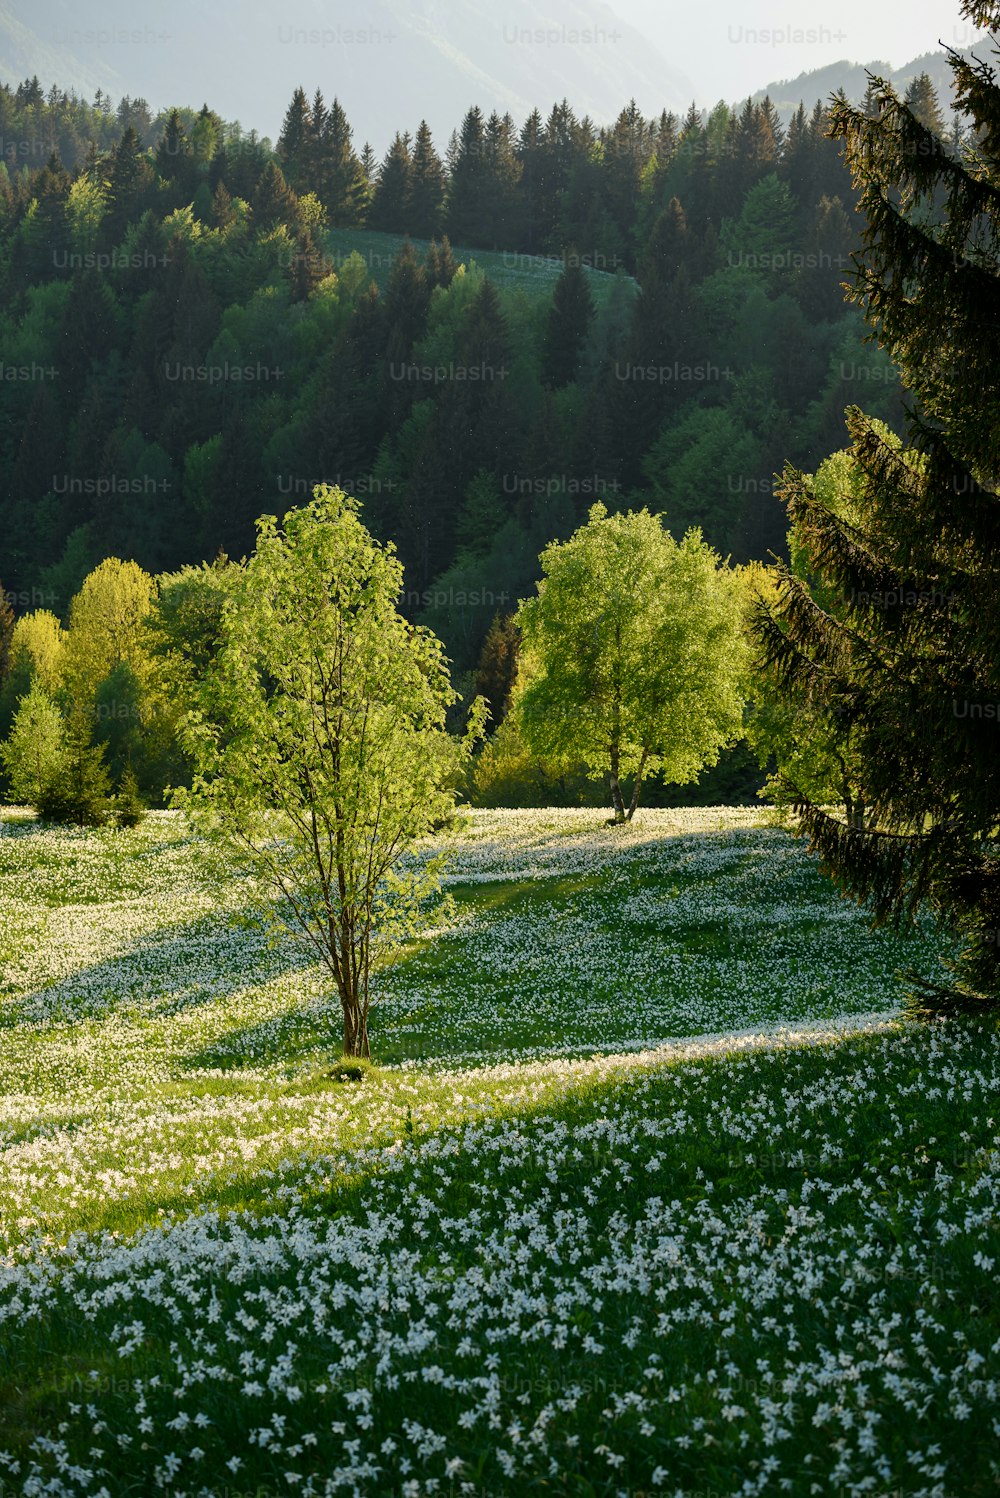 Un champ verdoyant avec des fleurs blanches et des arbres